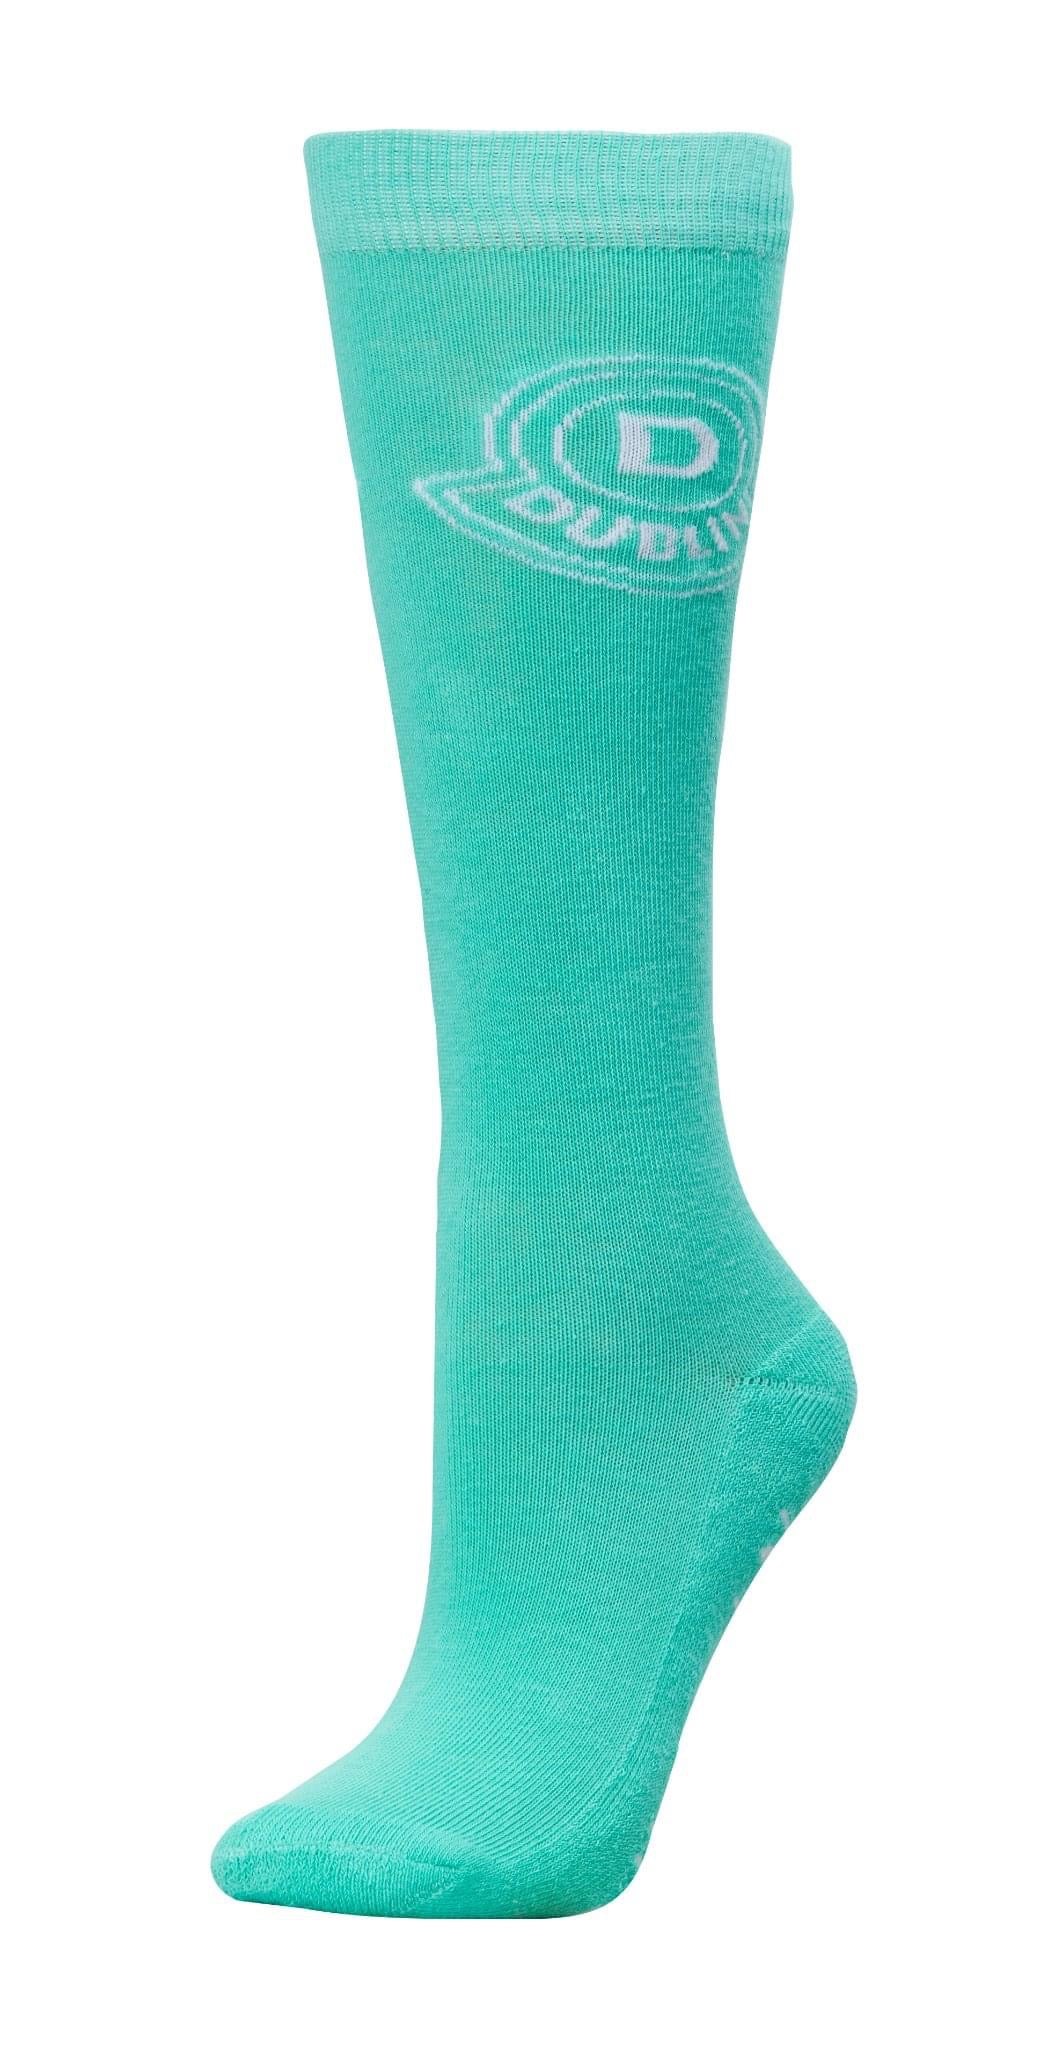 Dublin logo socks